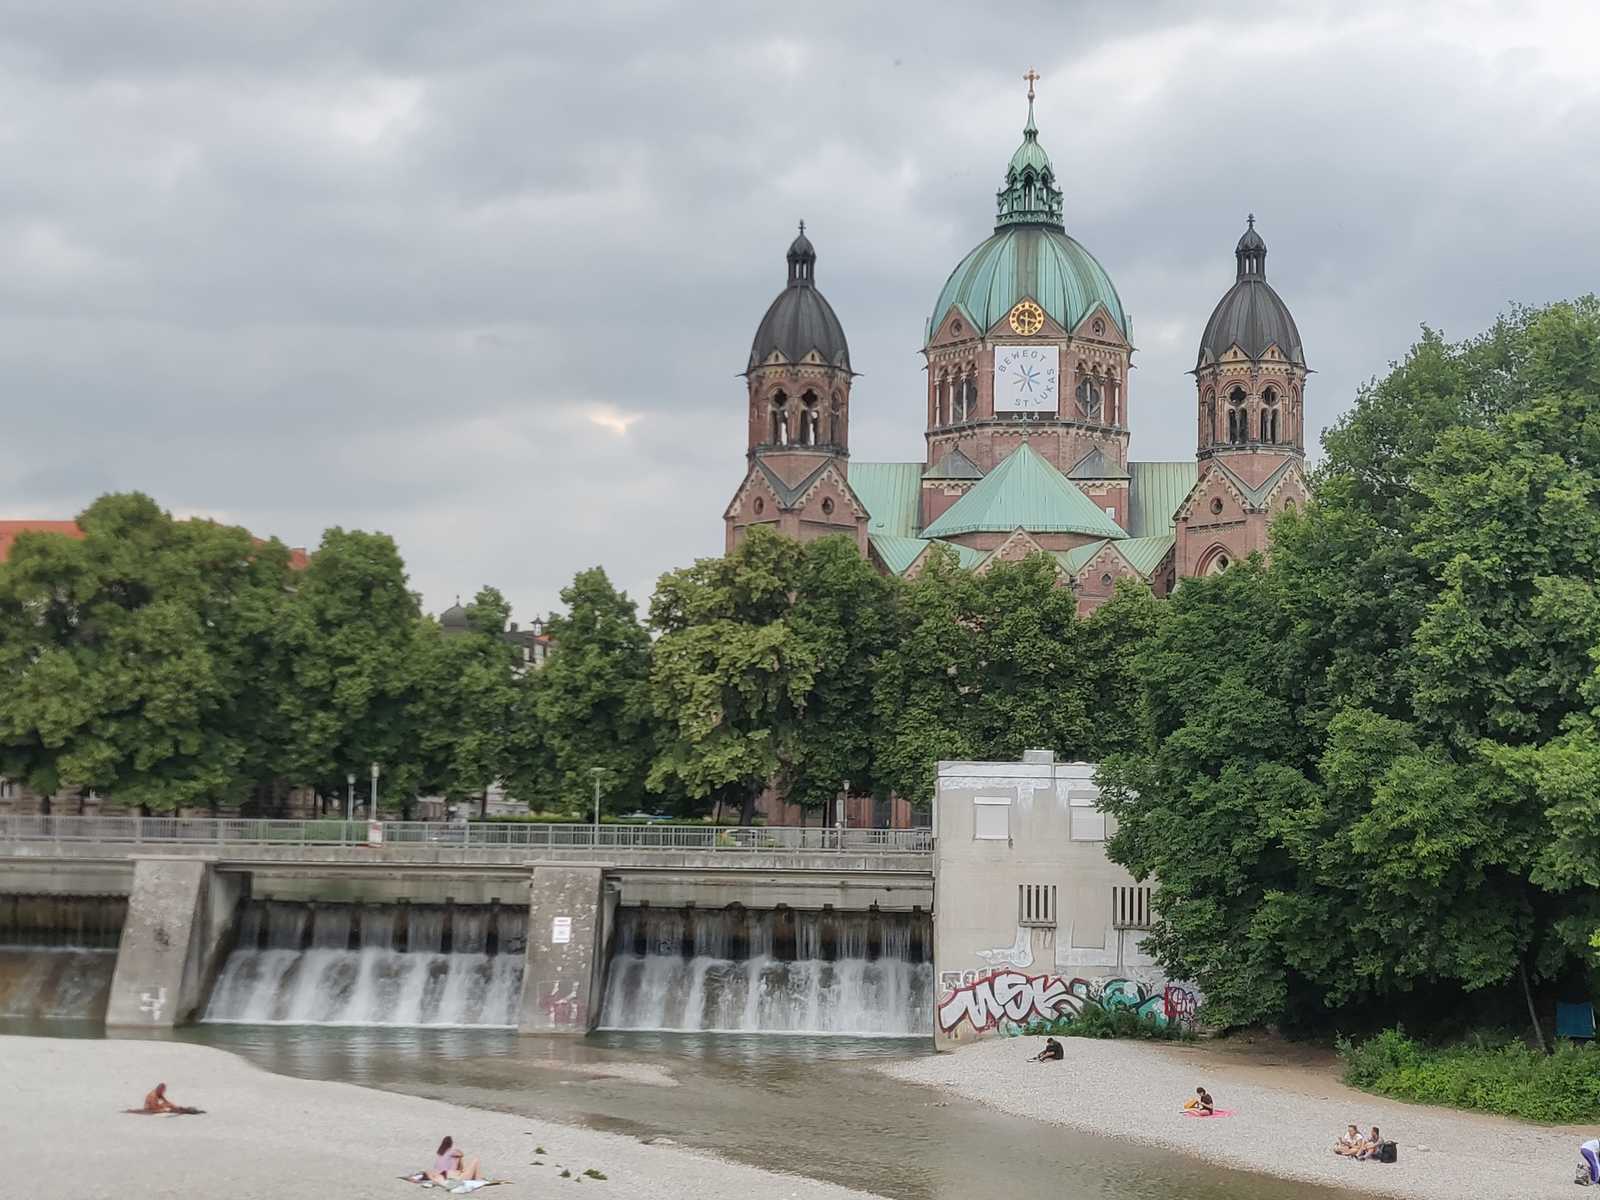 Munich Allemagne vue sur le fleuve Isar et un barrage d'eau. En arrière-plan, une église impressionnante, architecture, infrastructure, voyages intervilles,